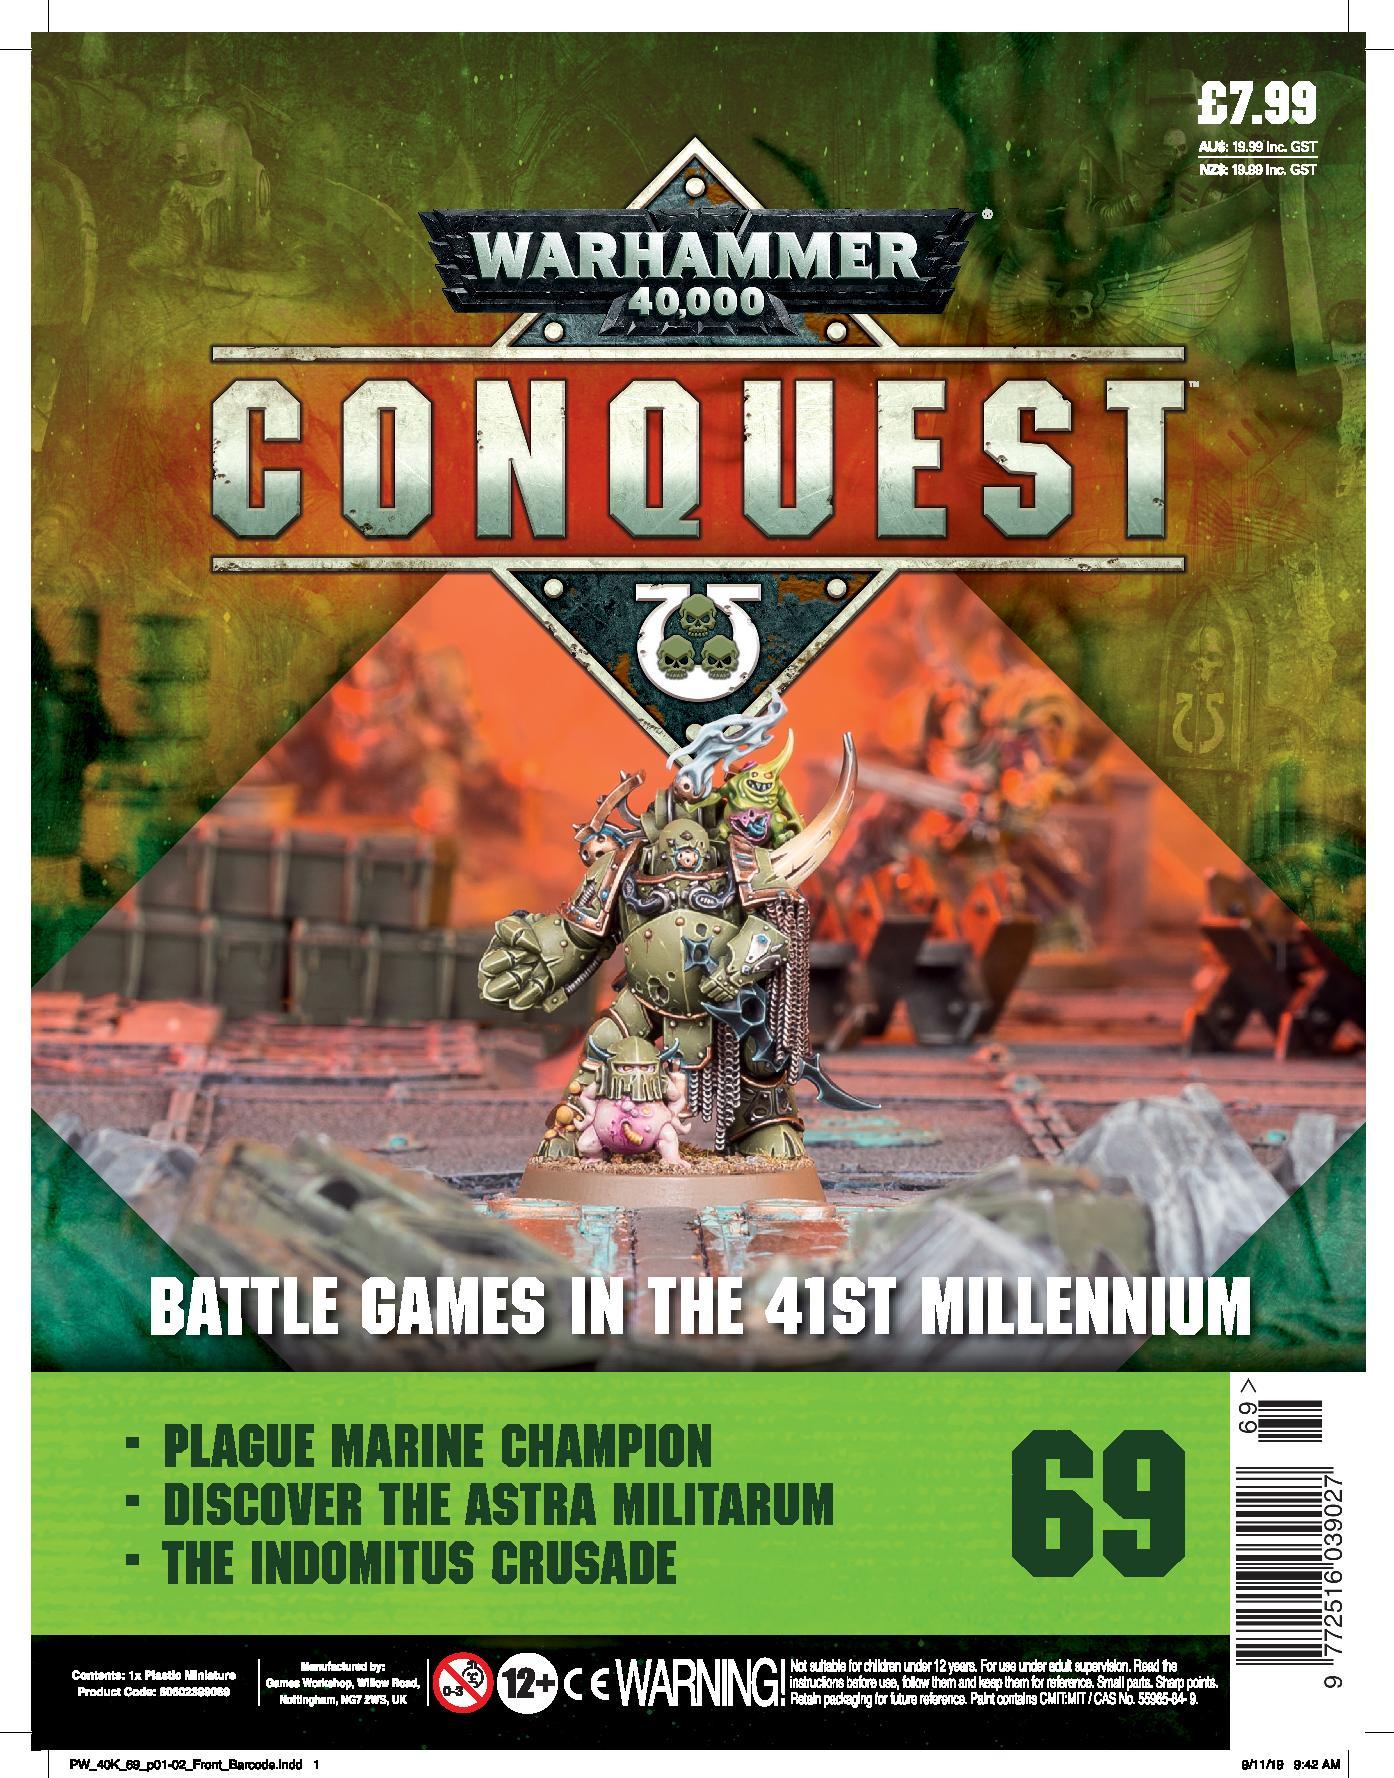 Warhammer Conquest #69 - Waterfront News